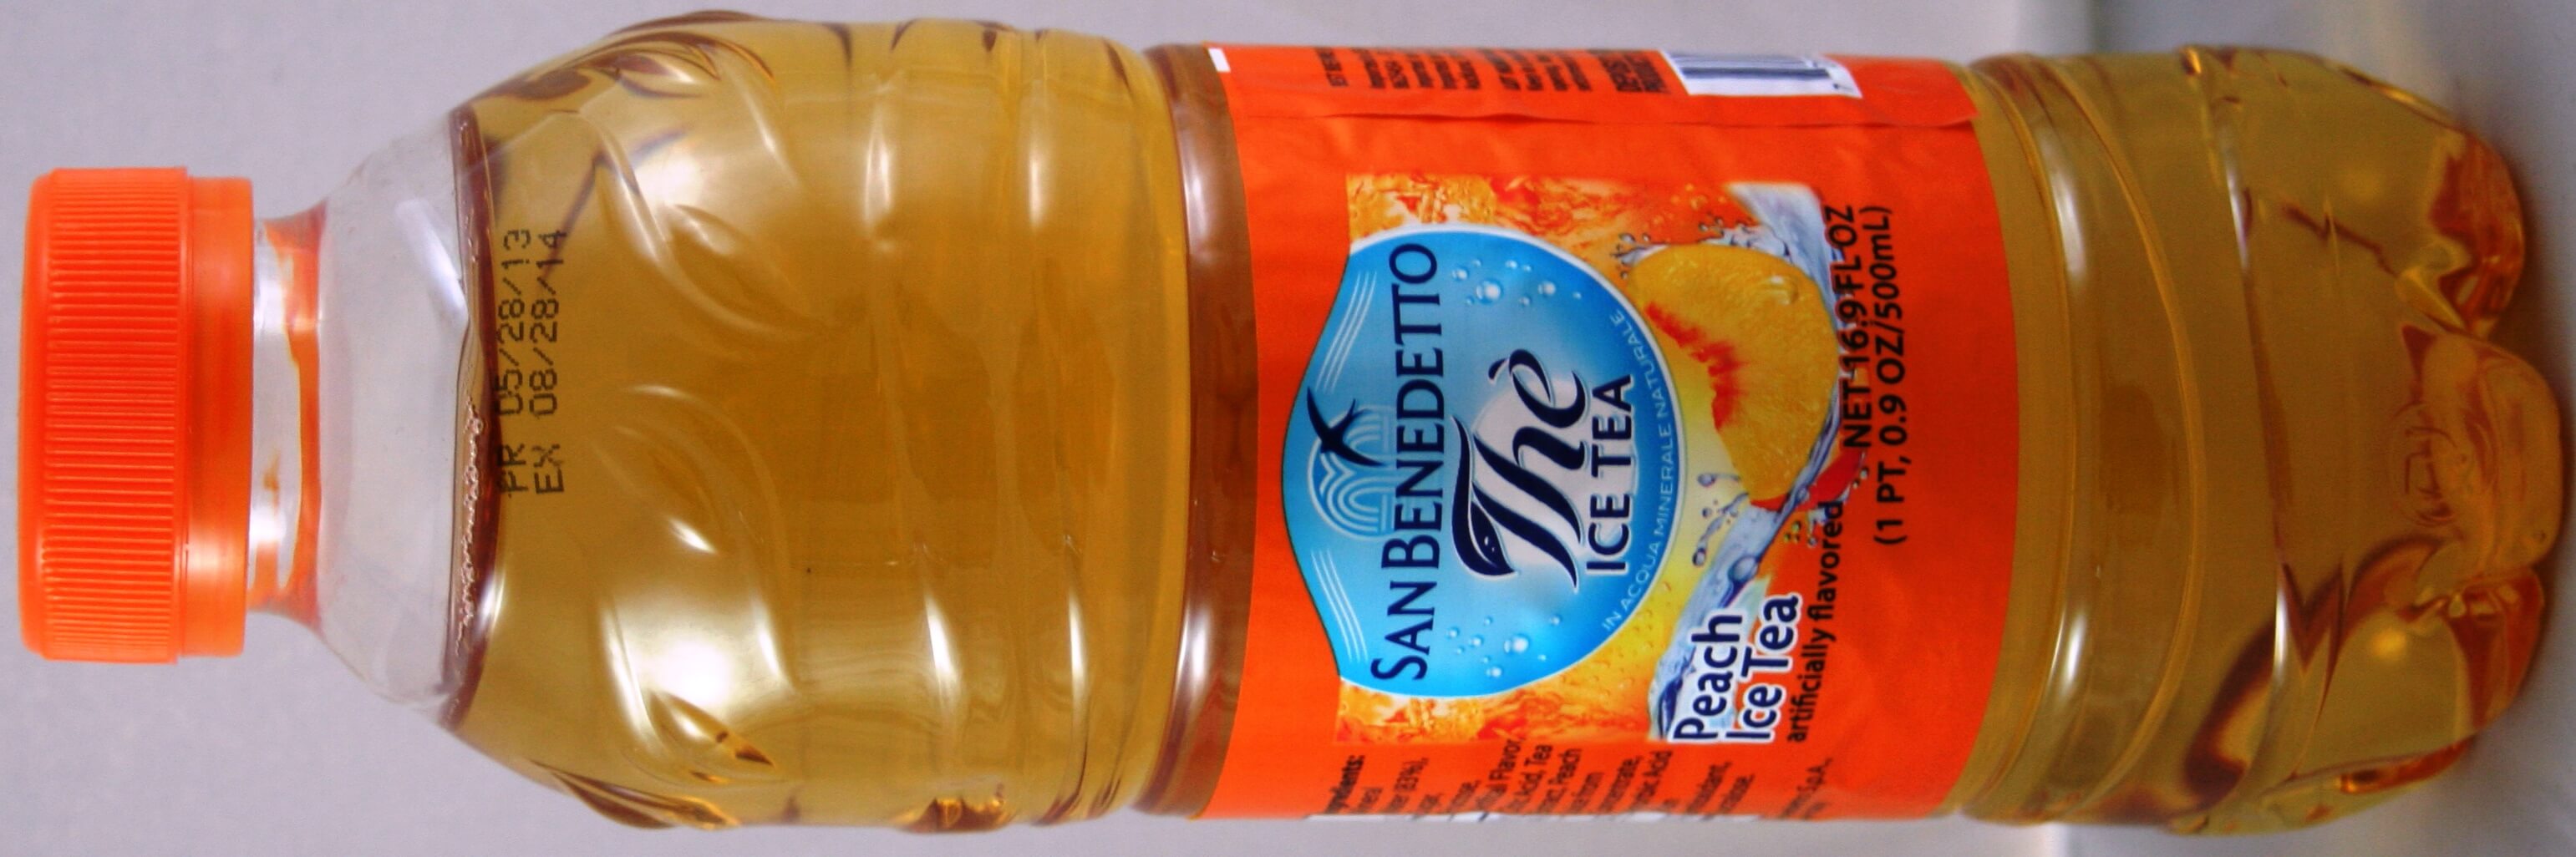 San Benedetto Peach Iced Tea 16.9 fl oz (500 ml)